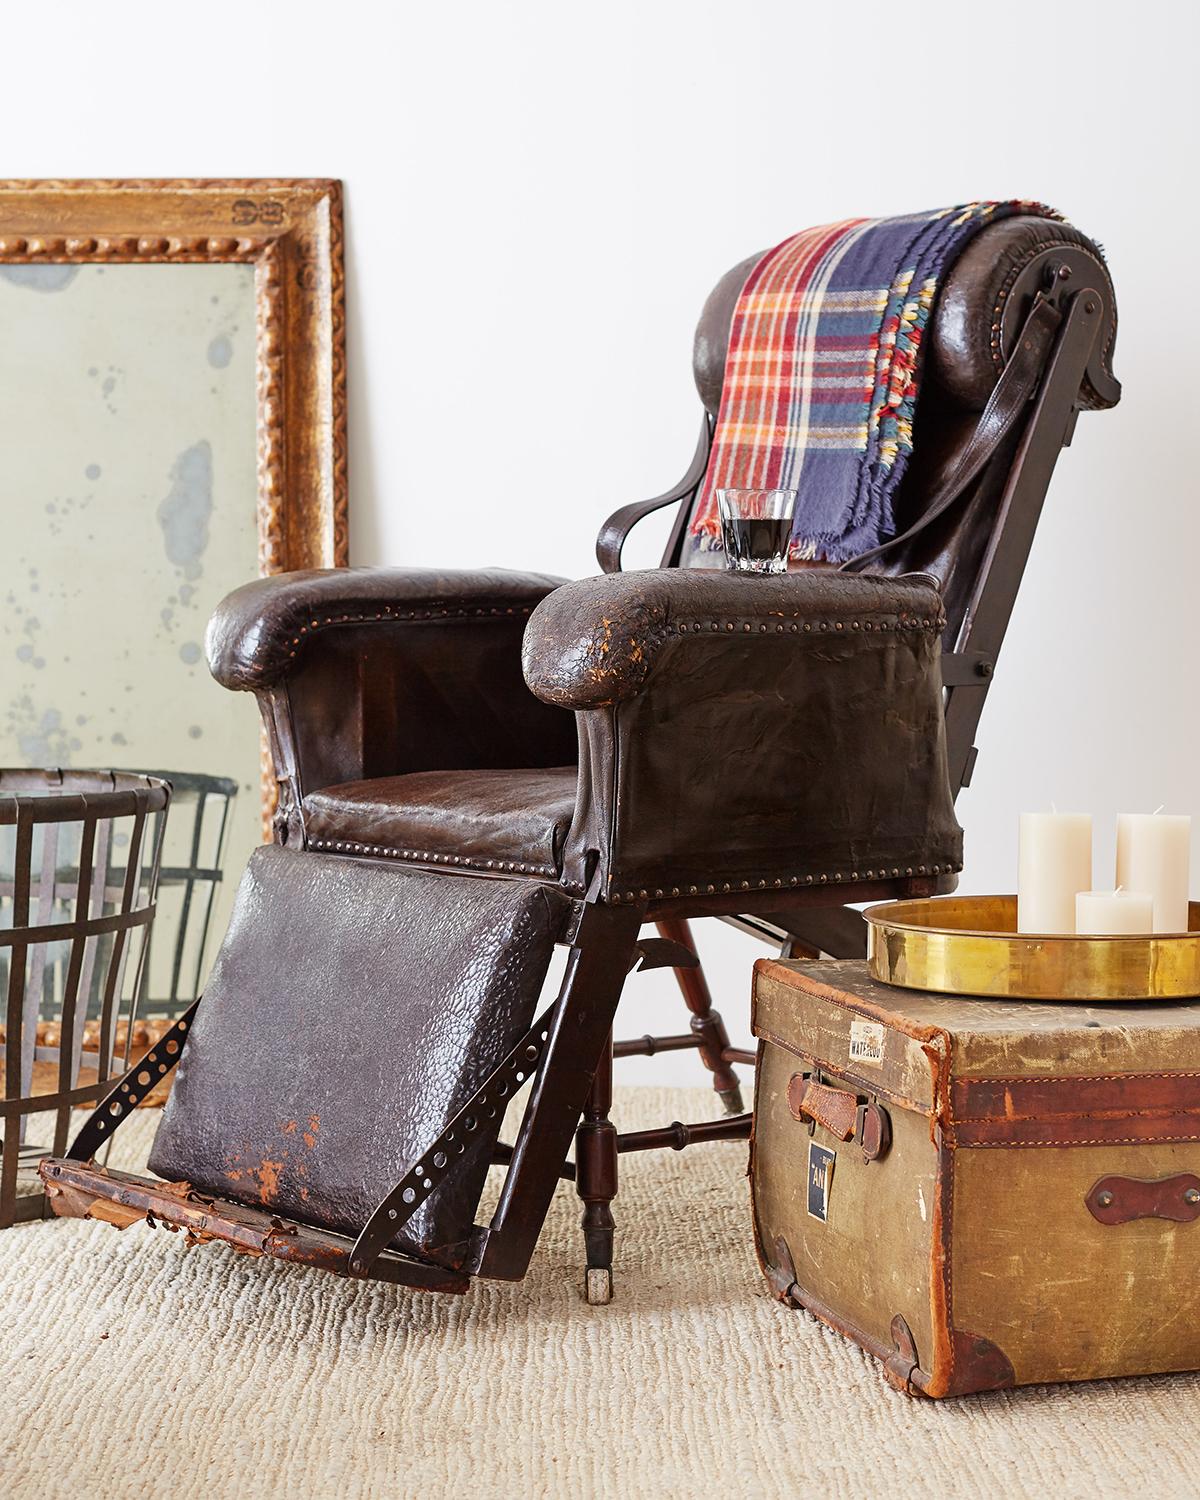 Fantastique fauteuil inclinable ou chaise longue en cuir d'époque Napoléon III du 19e siècle. Le cadre en acajou est recouvert d'un cuir foncé riche et vieilli. Les surfaces en cuir sont bordées de têtes de clous en laiton et d'un épais rembourrage.